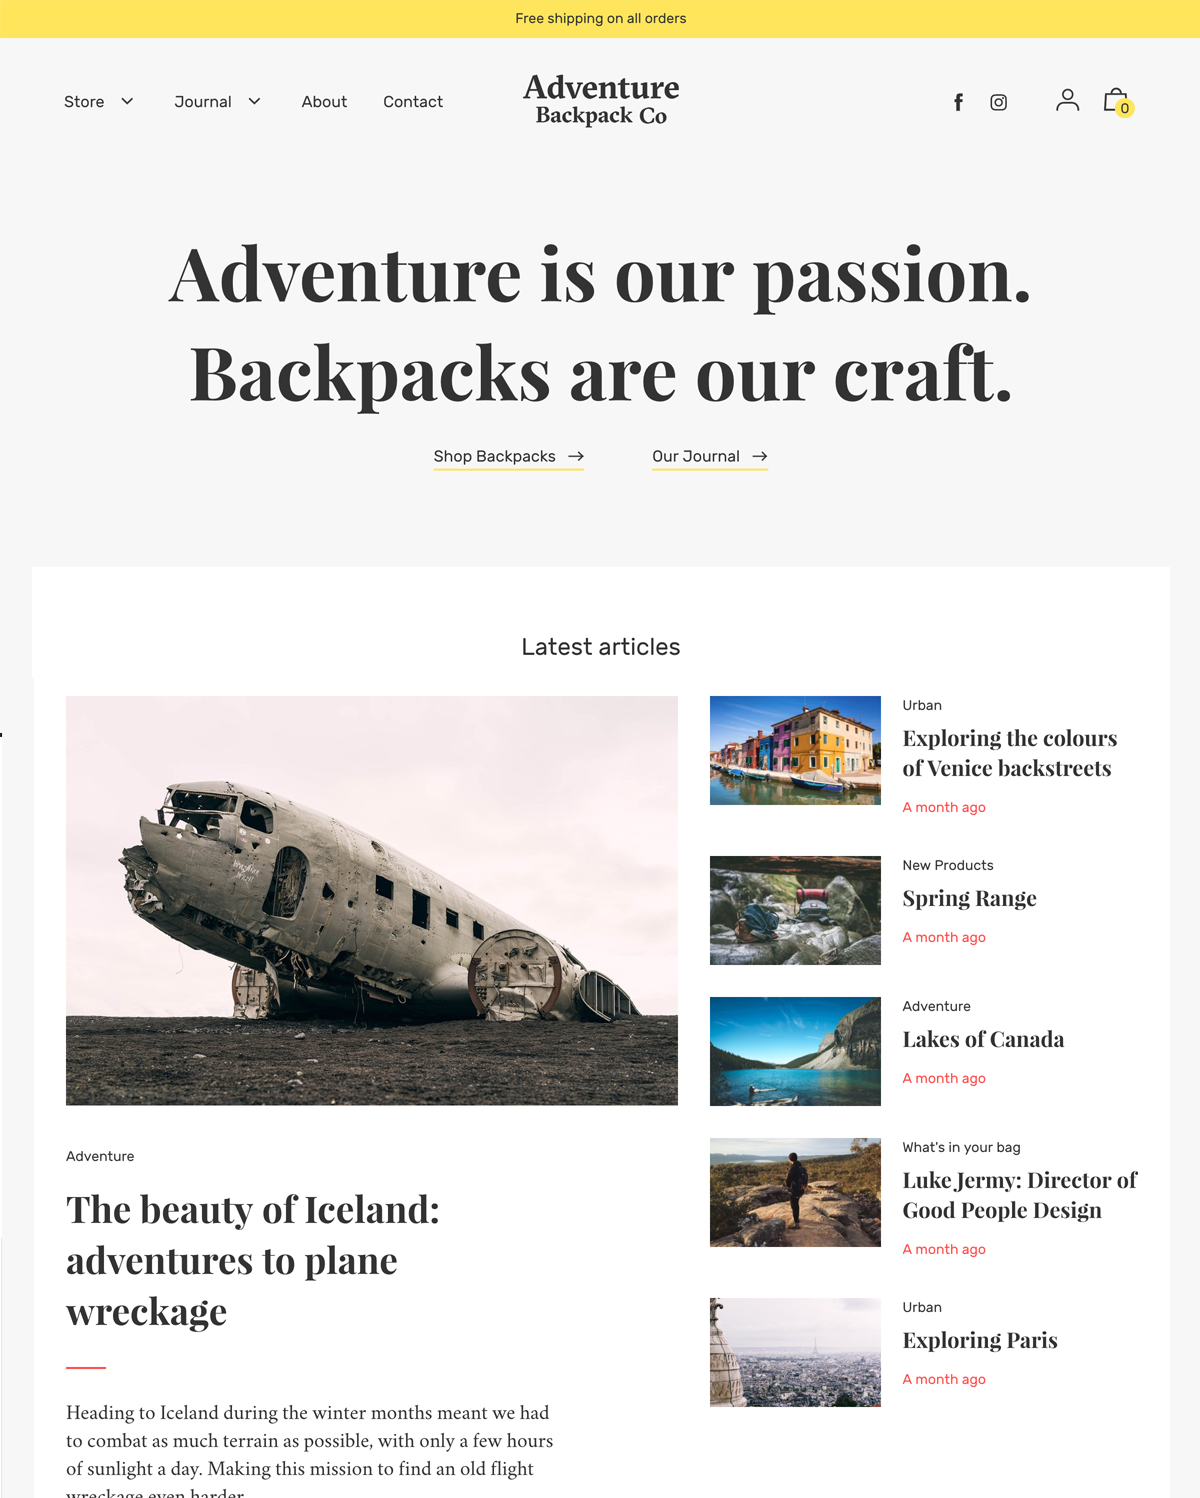 Anteprima in versione desktop di Editorial nello stile “Adventure”